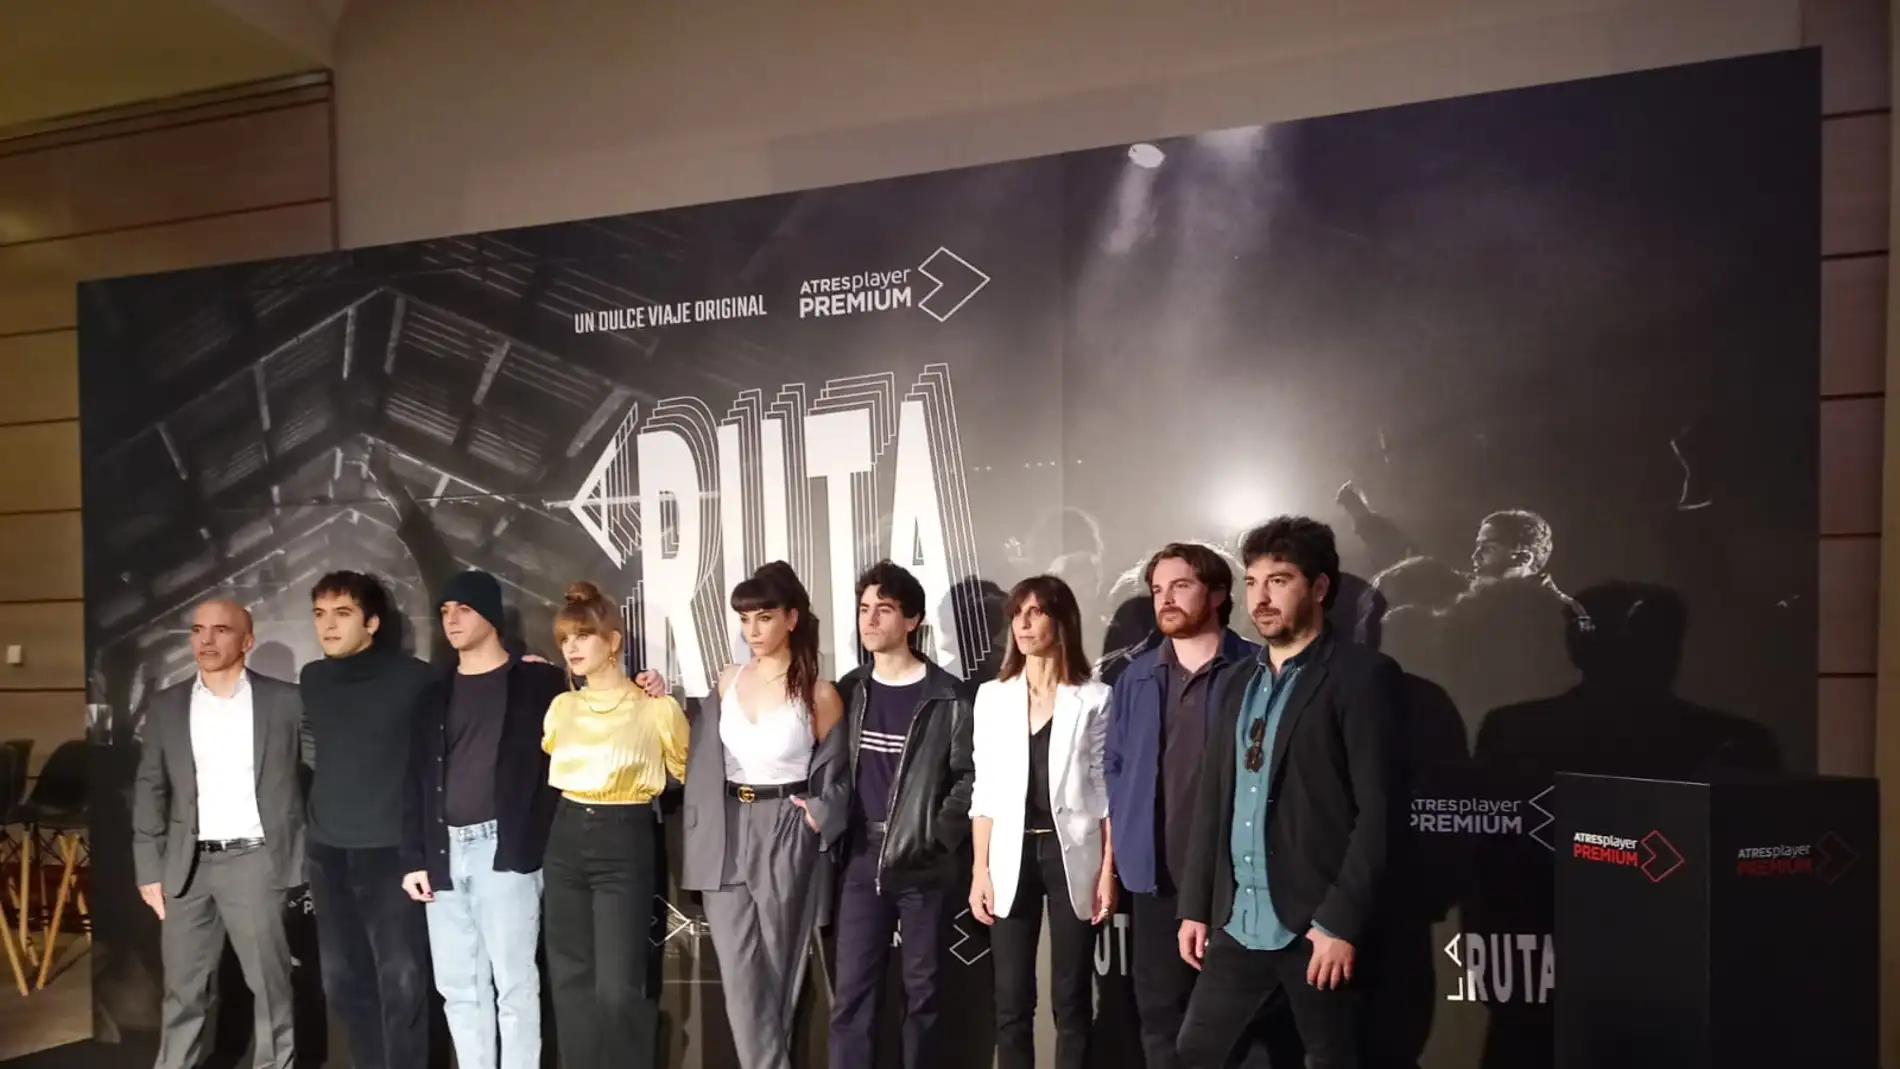 El elenco de actores junto a los creadores de la serie y responsables de Atresmedia han presentado La Ruta